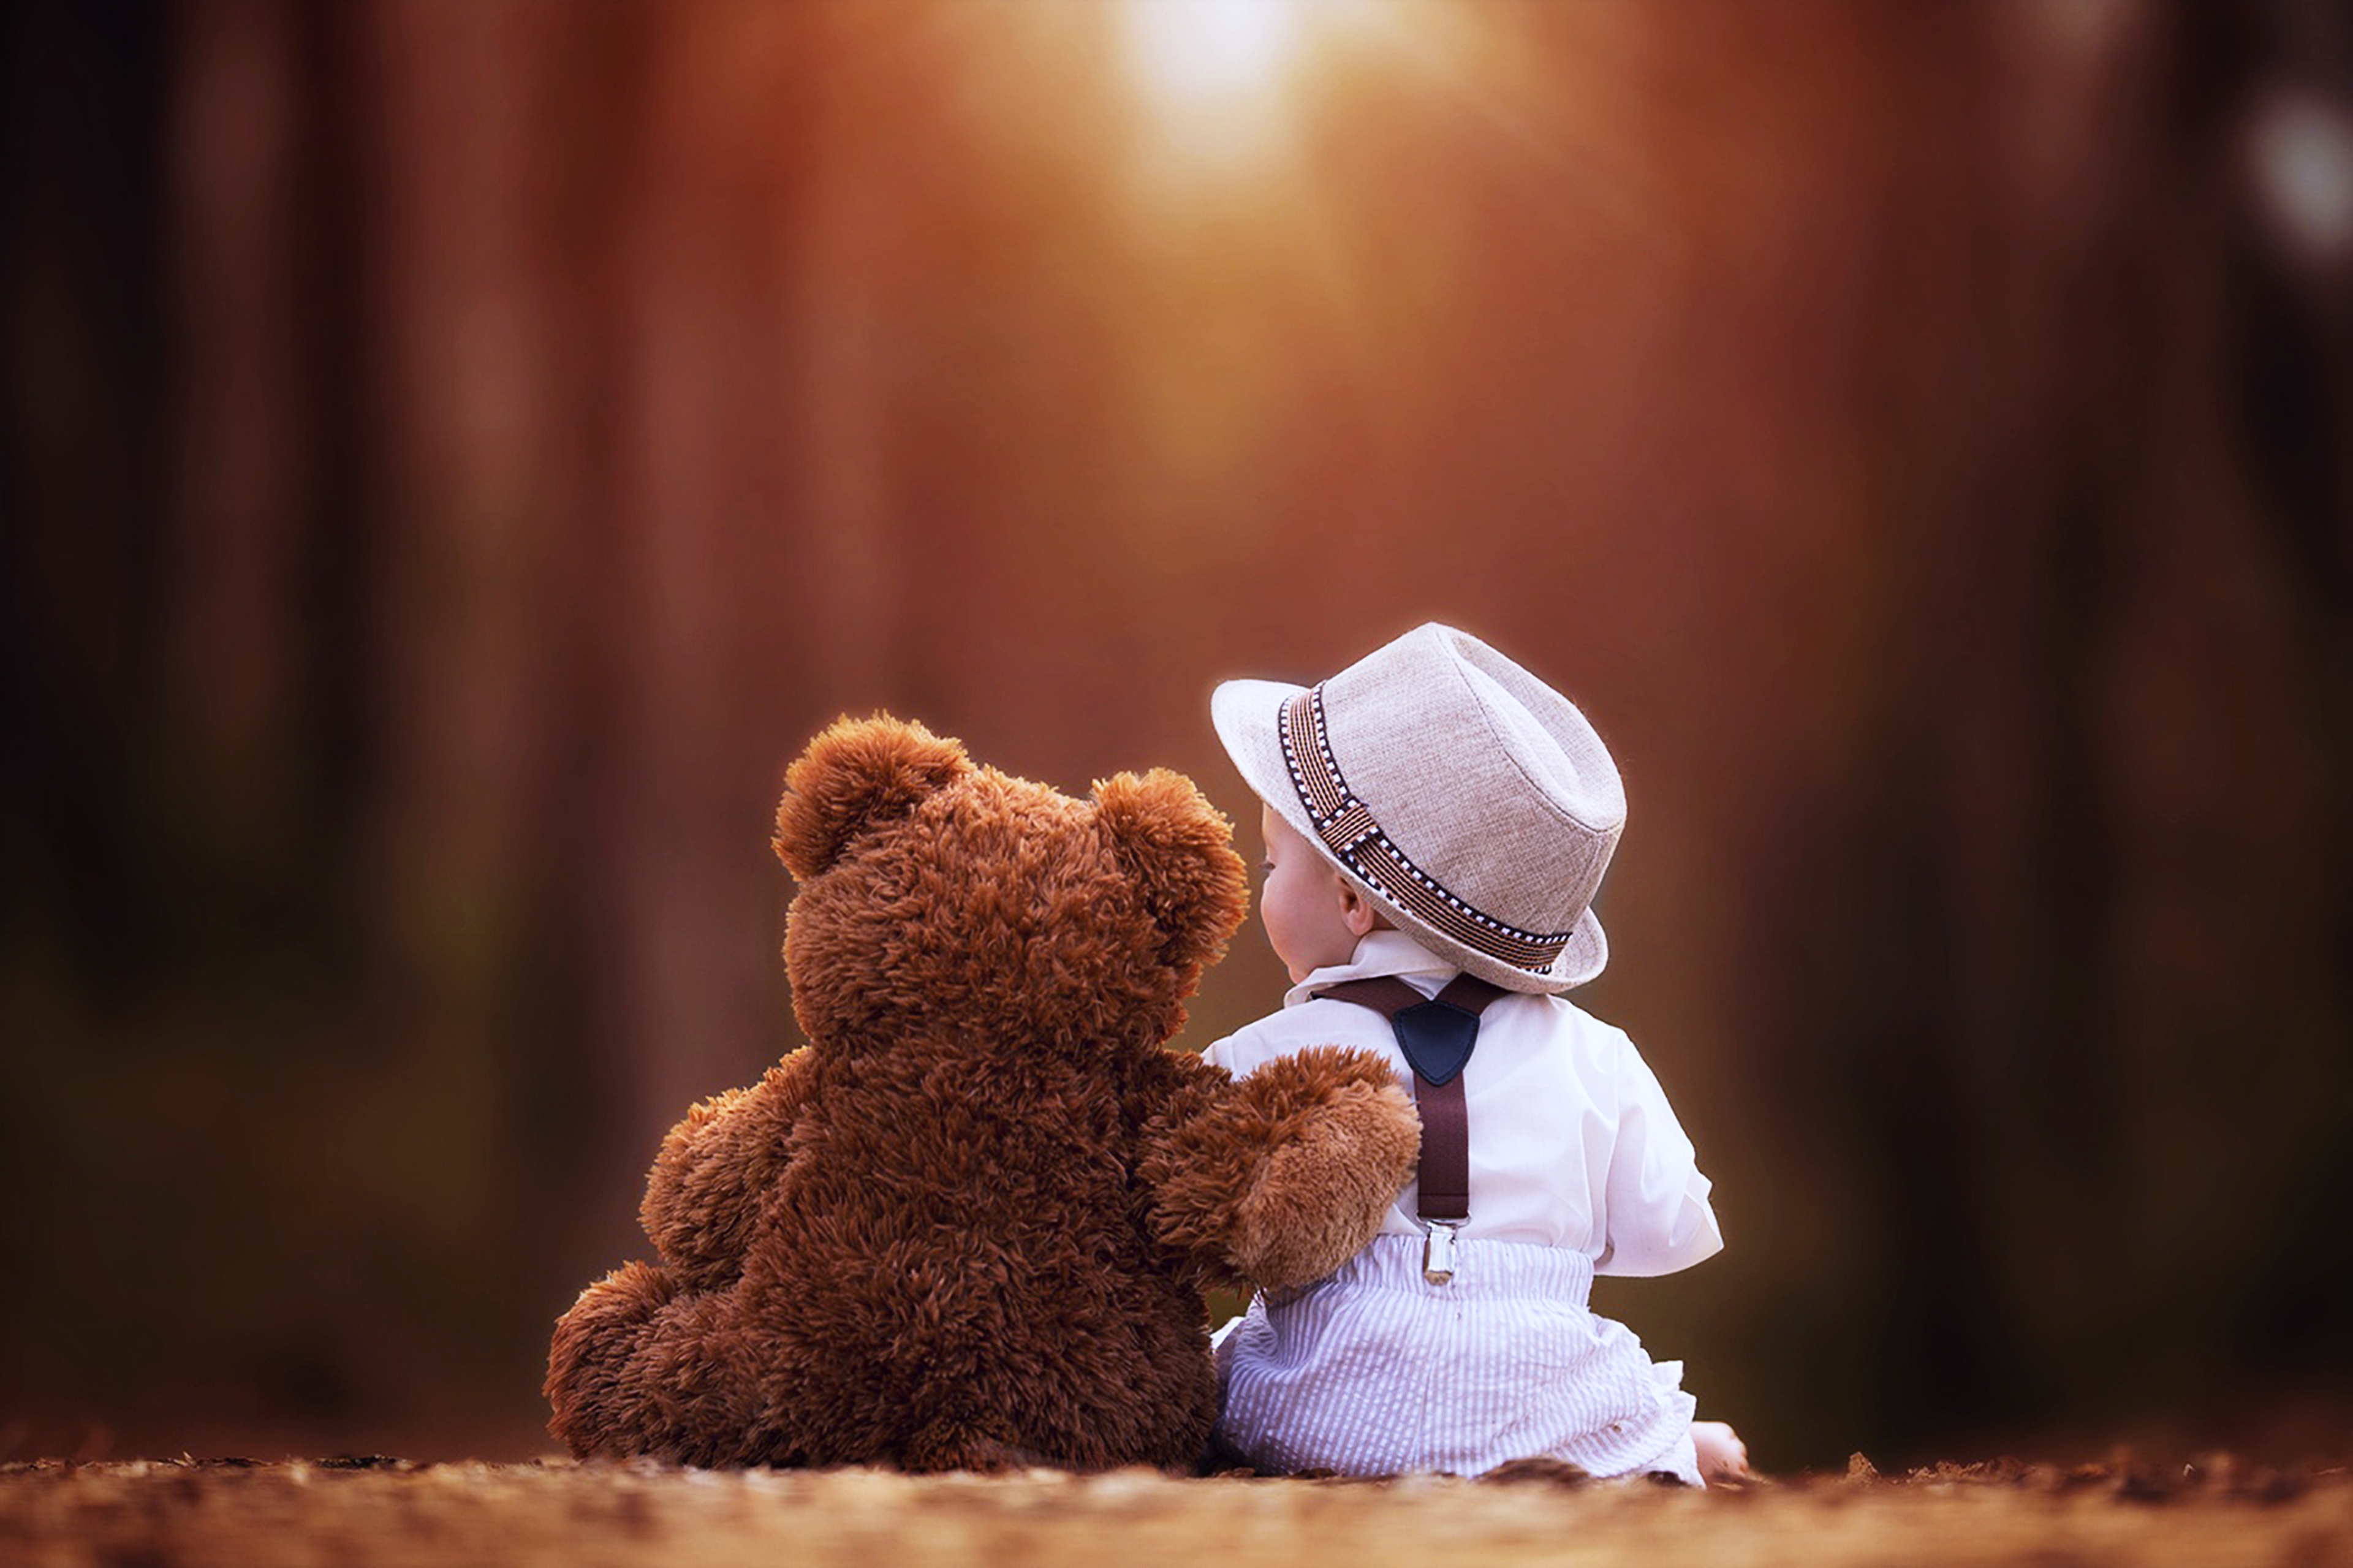 photography, teddy bear, child